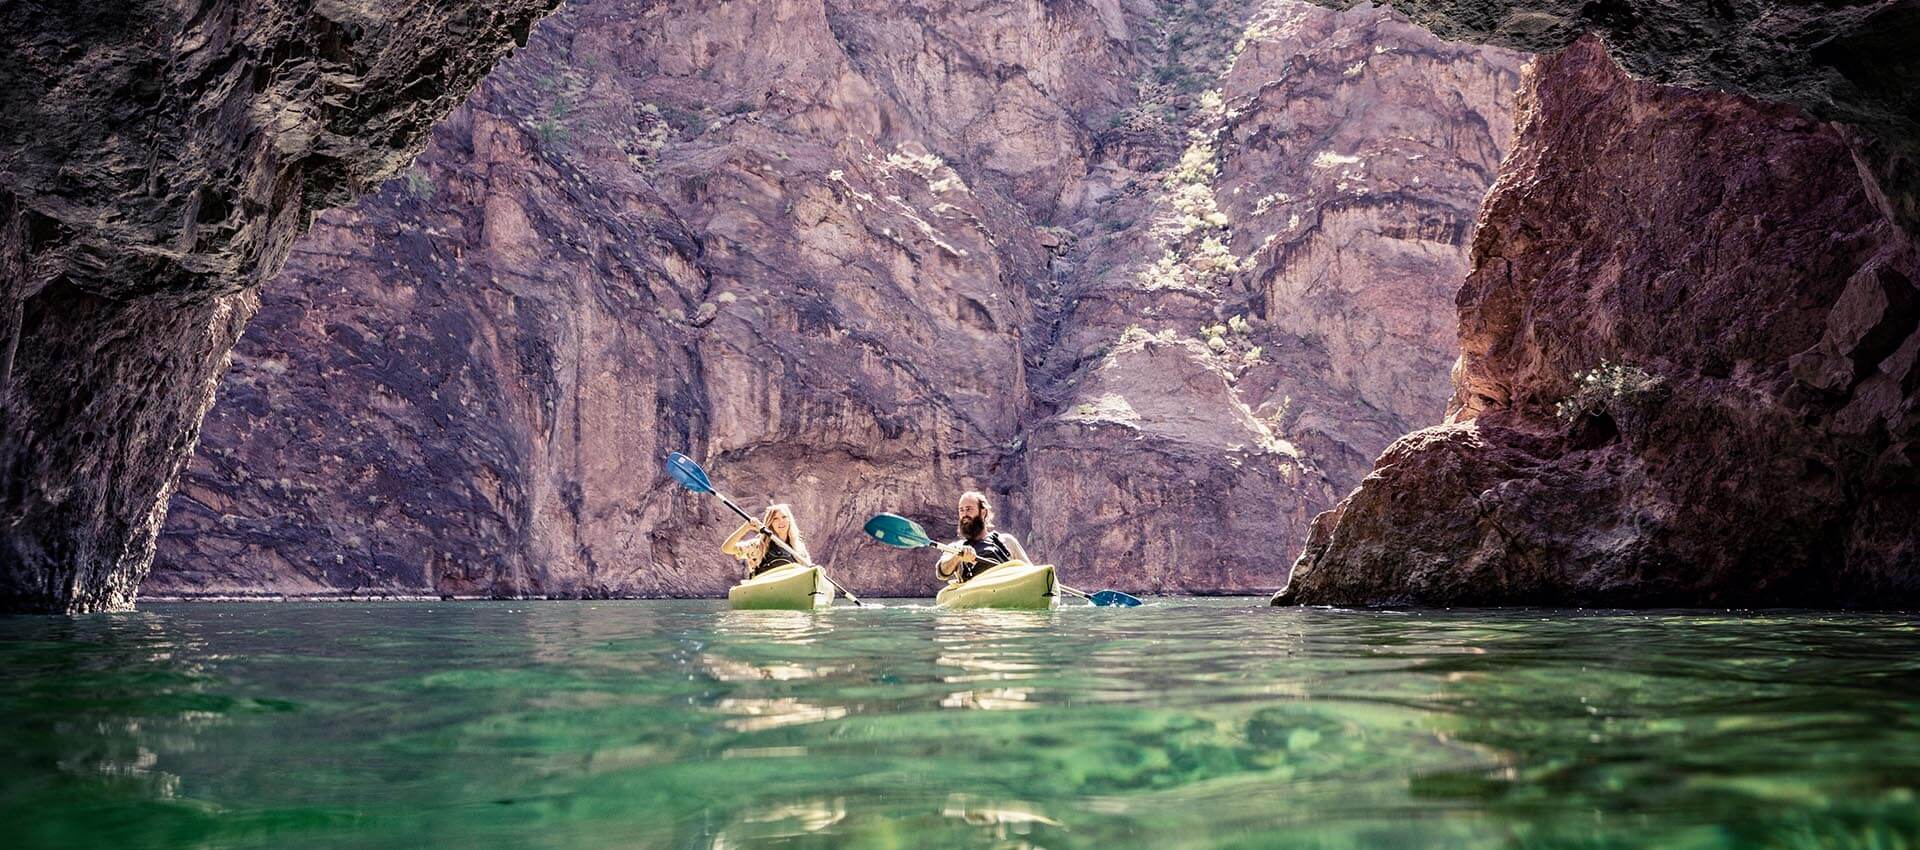 黑峡谷皮划艇,科罗拉多河,胡佛水坝